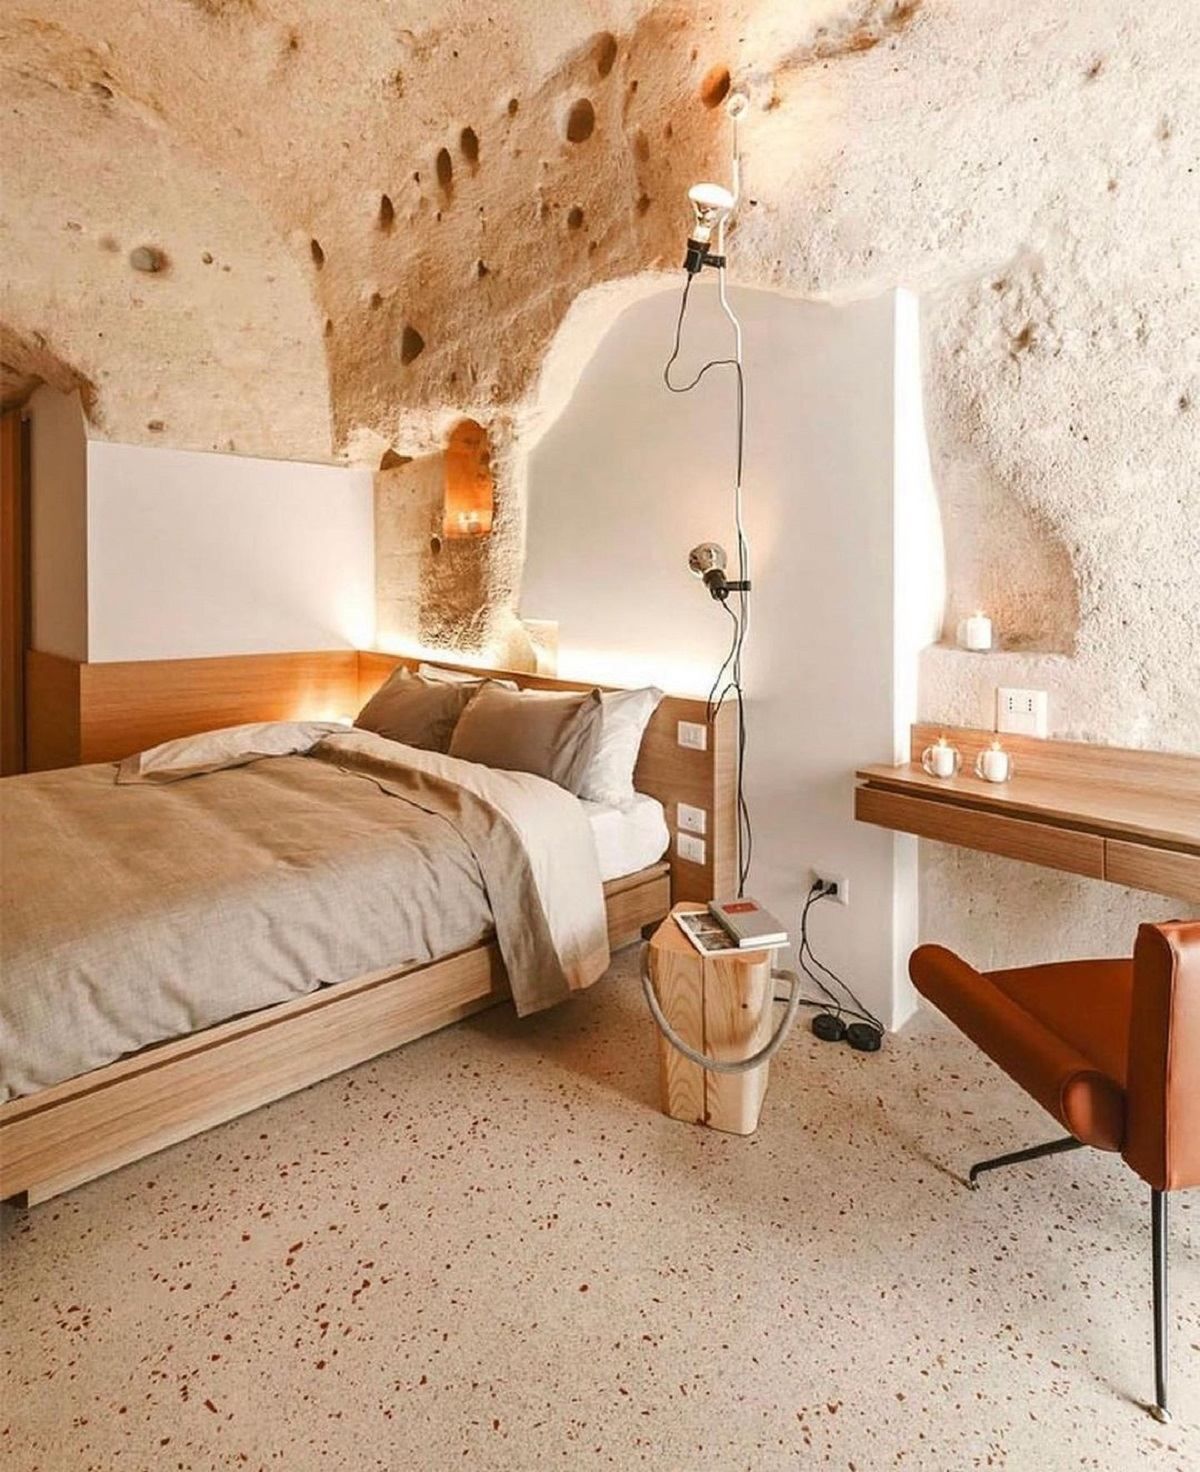 Исторический отель в пещере на юге Италии: фото интерьера, что поражает